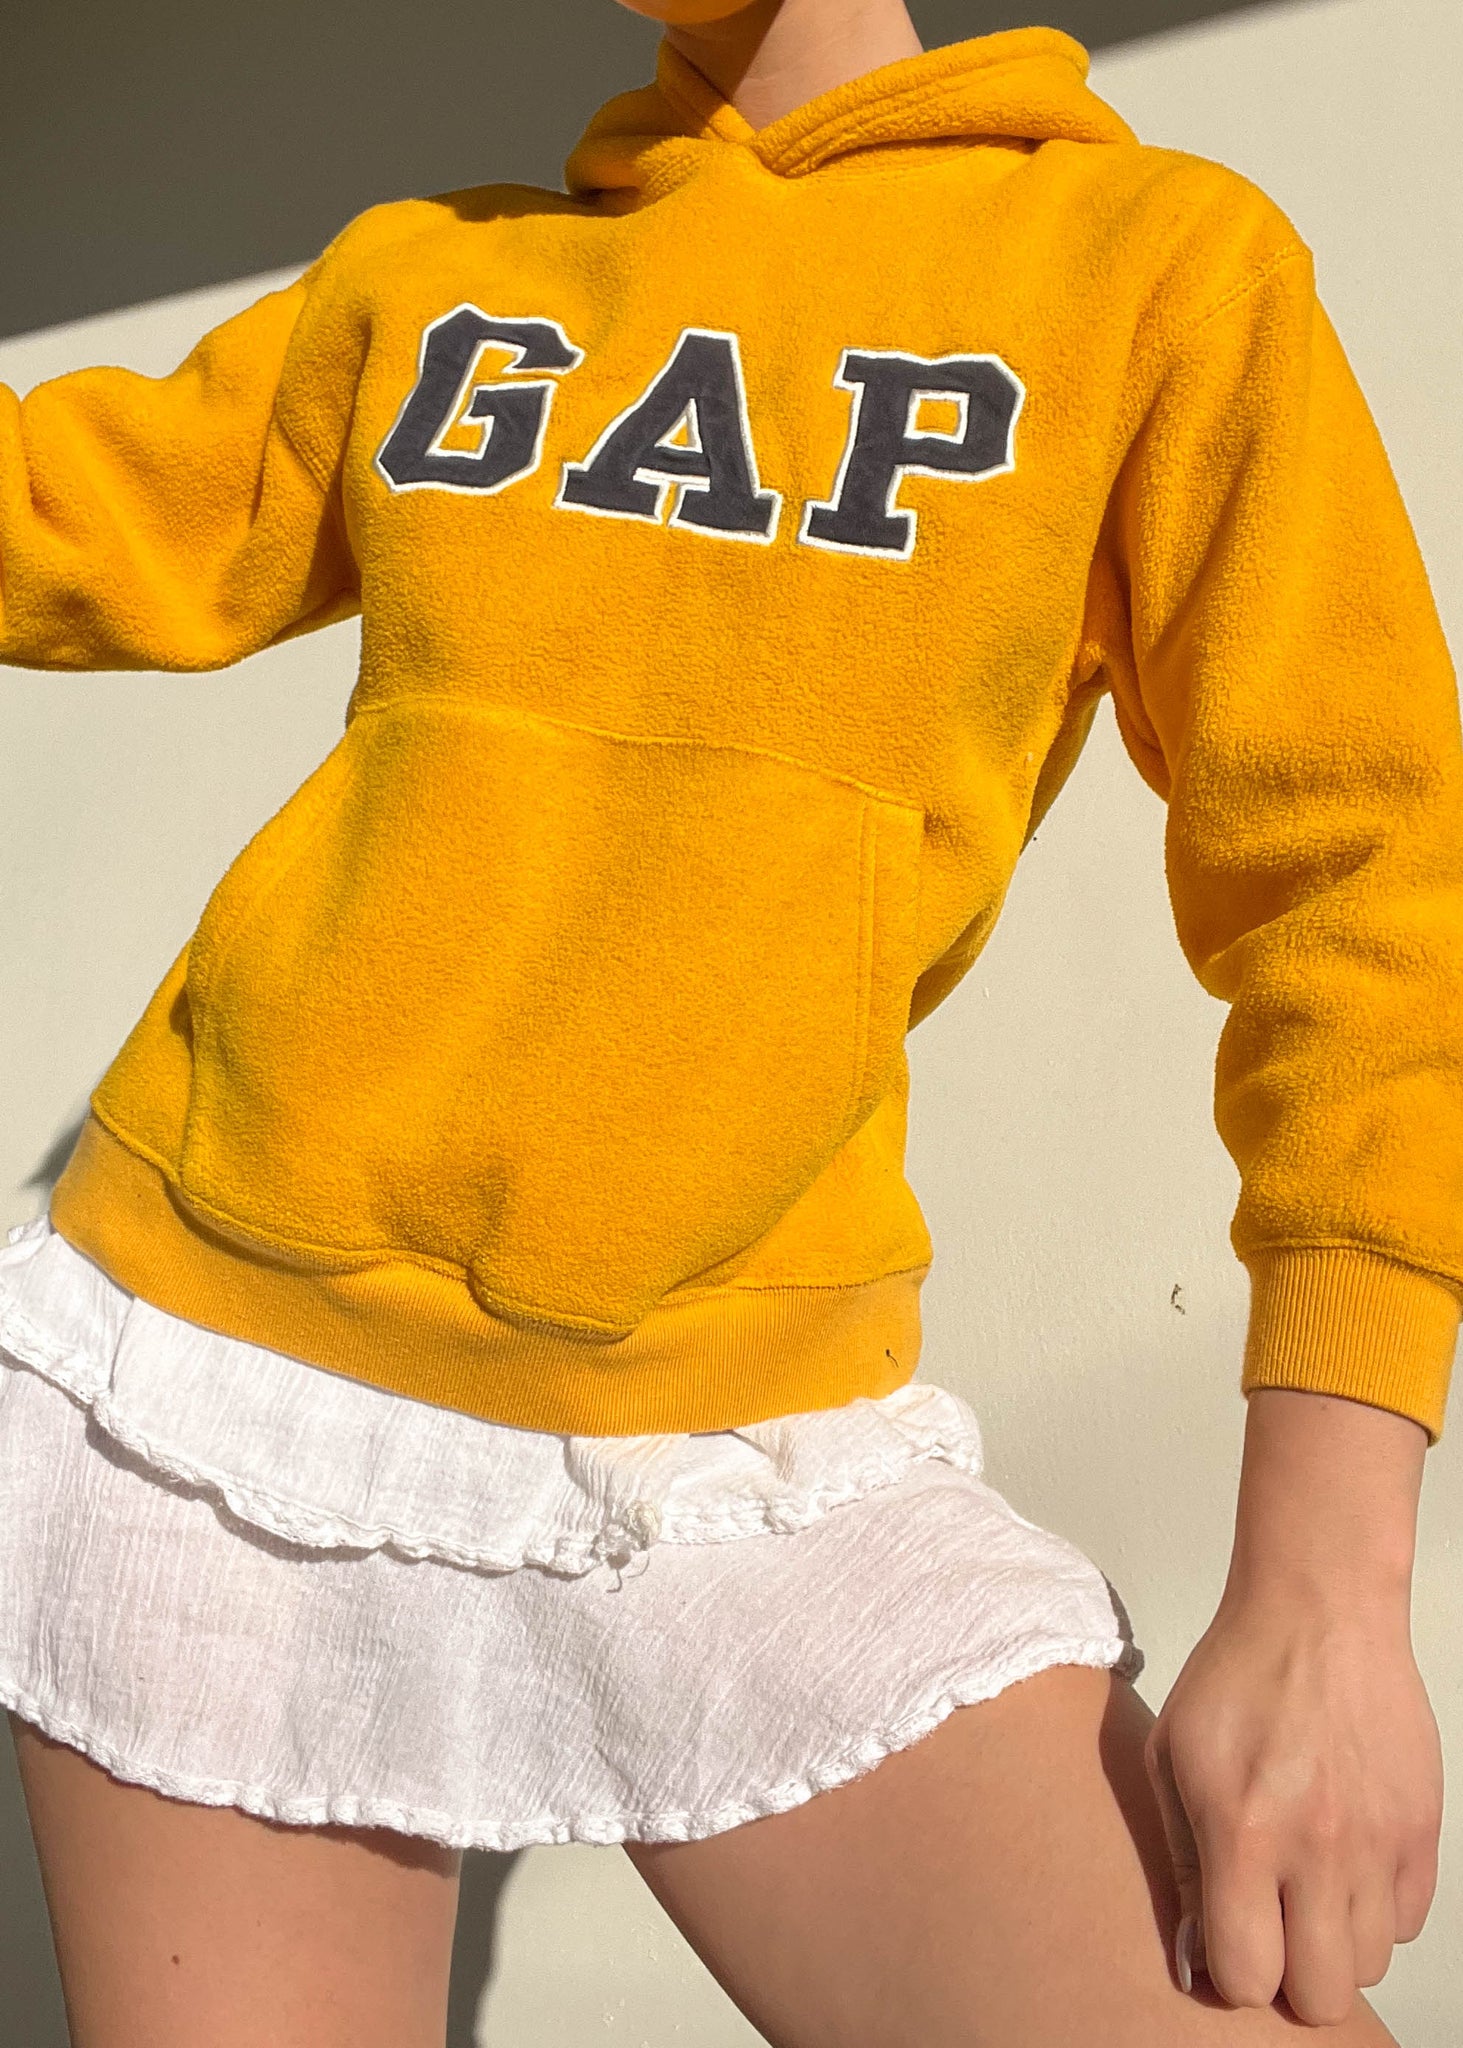 Mustard Gap Fleece Hoodie (XS-S)